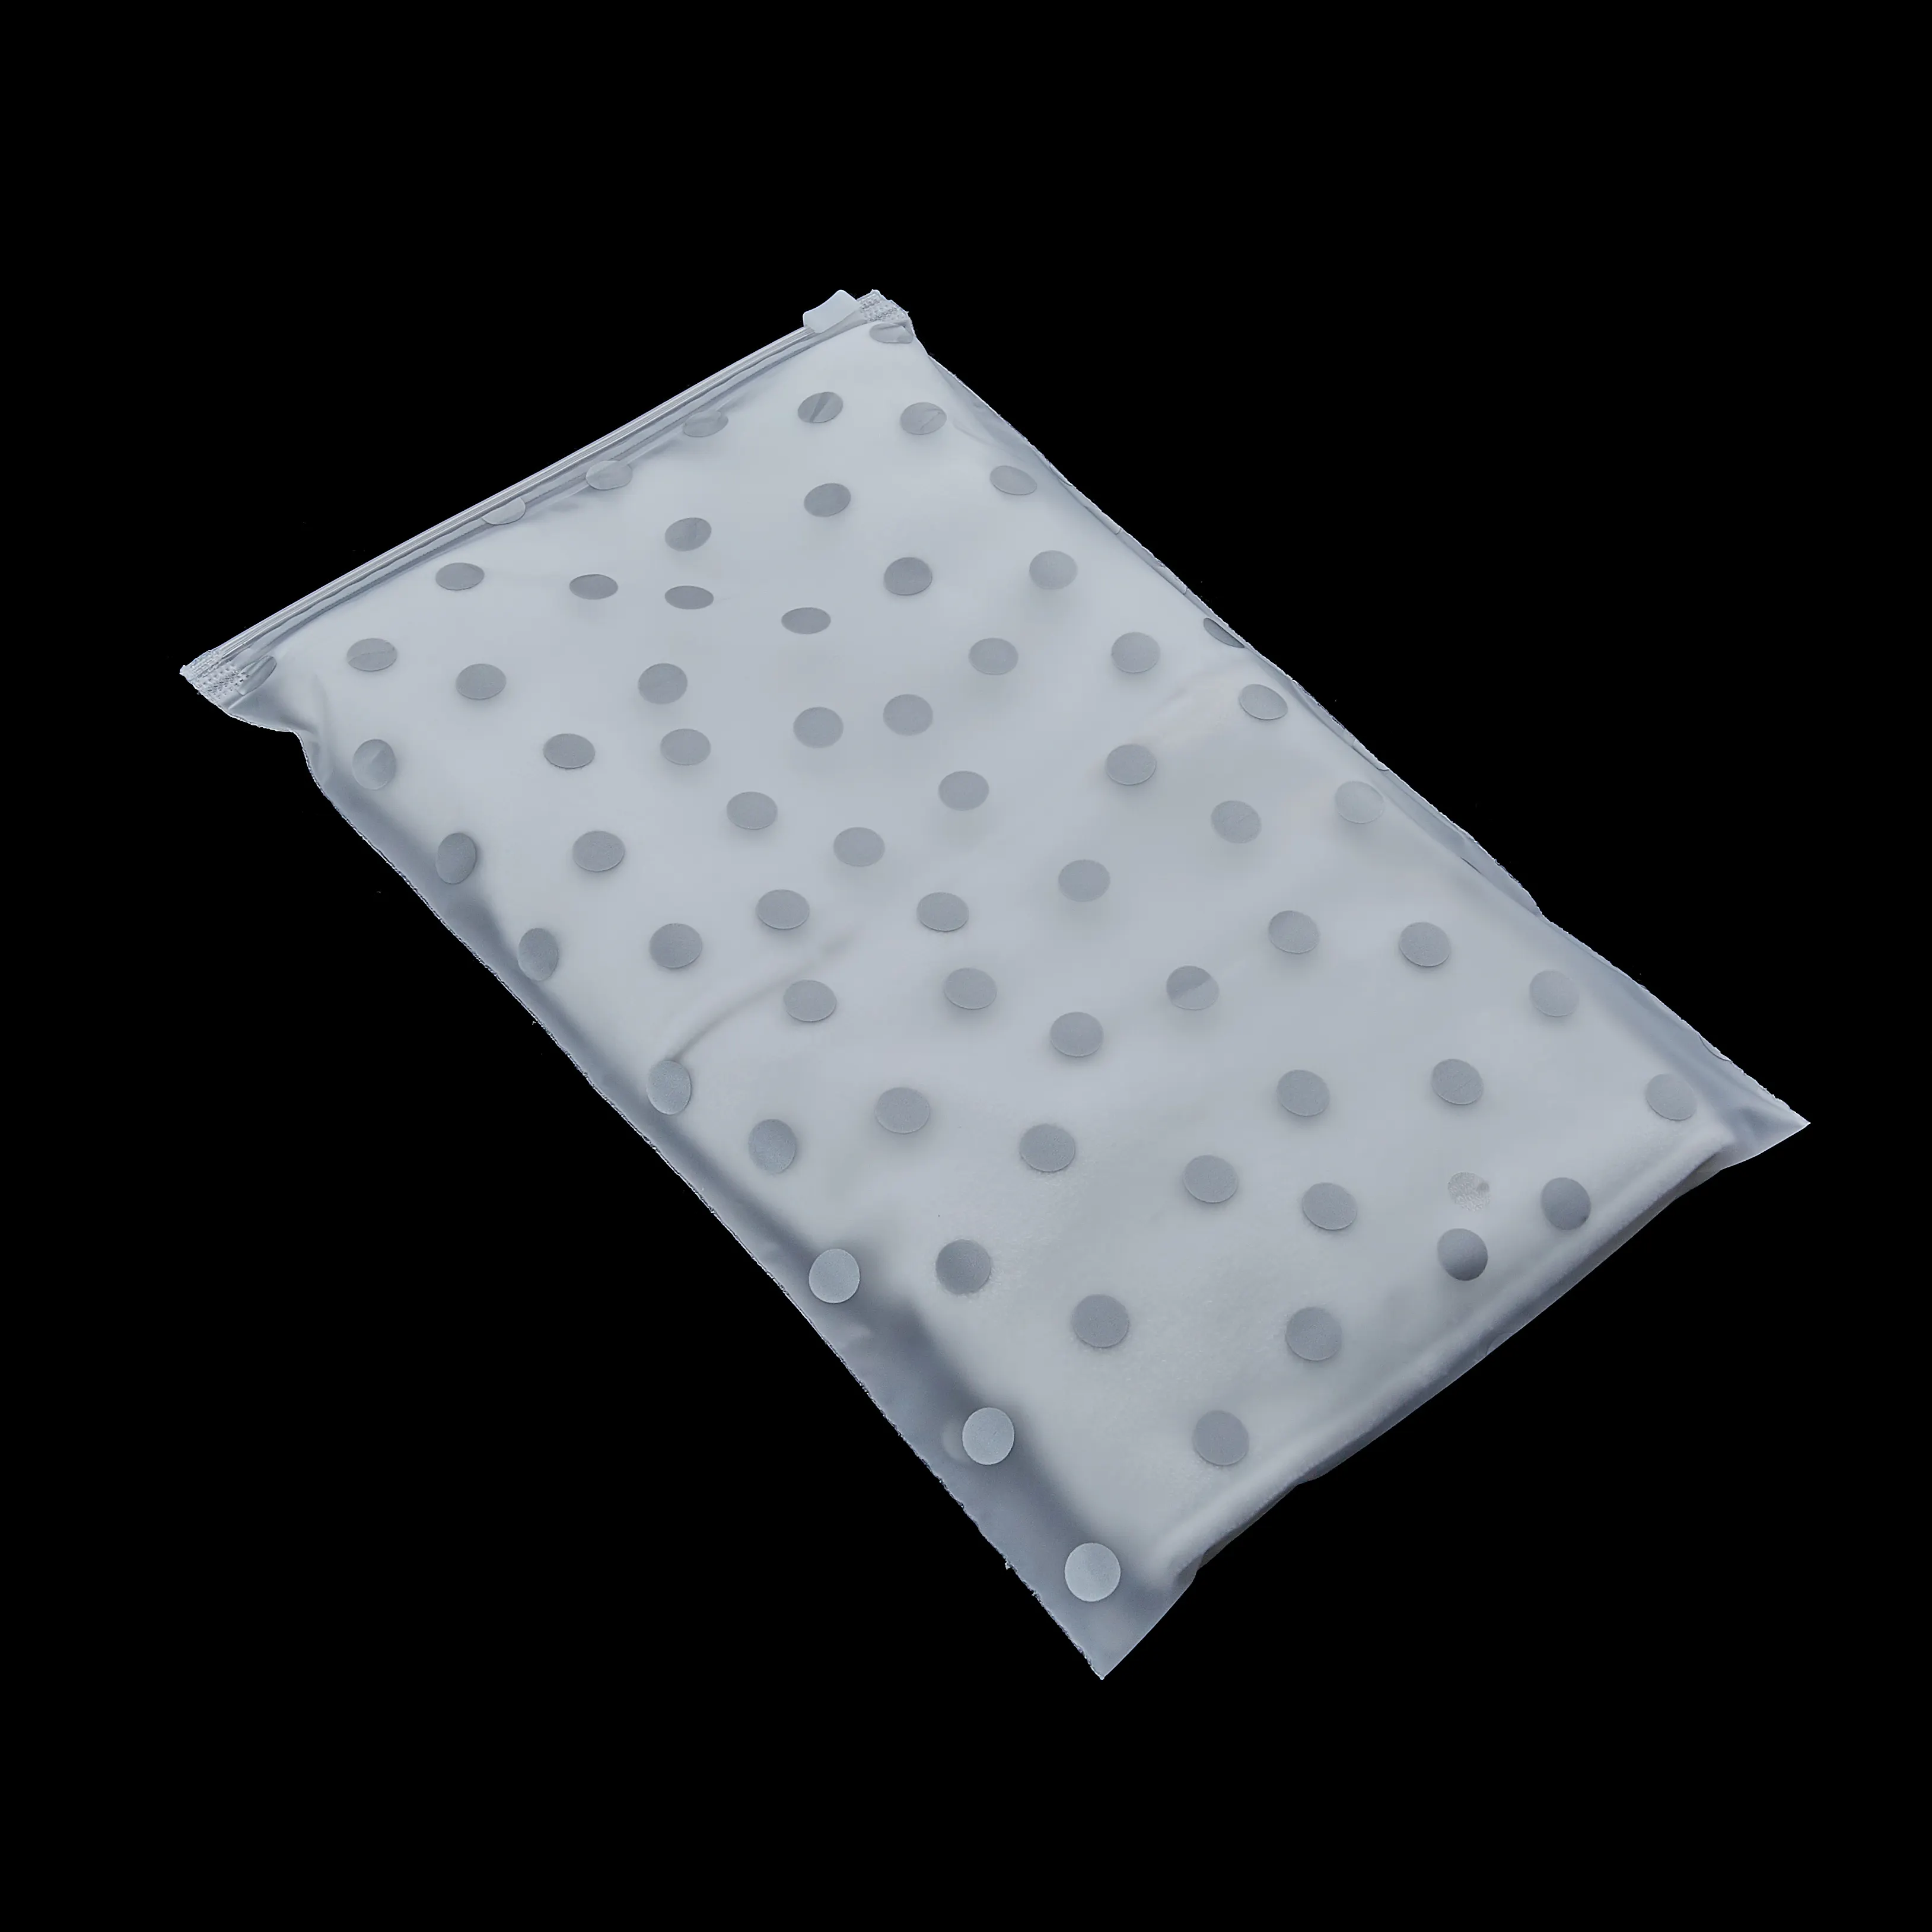 친환경 의류 속옷 양말 포장 비닐 봉투 PE 투명 인쇄 지퍼 가방 로고와 함께